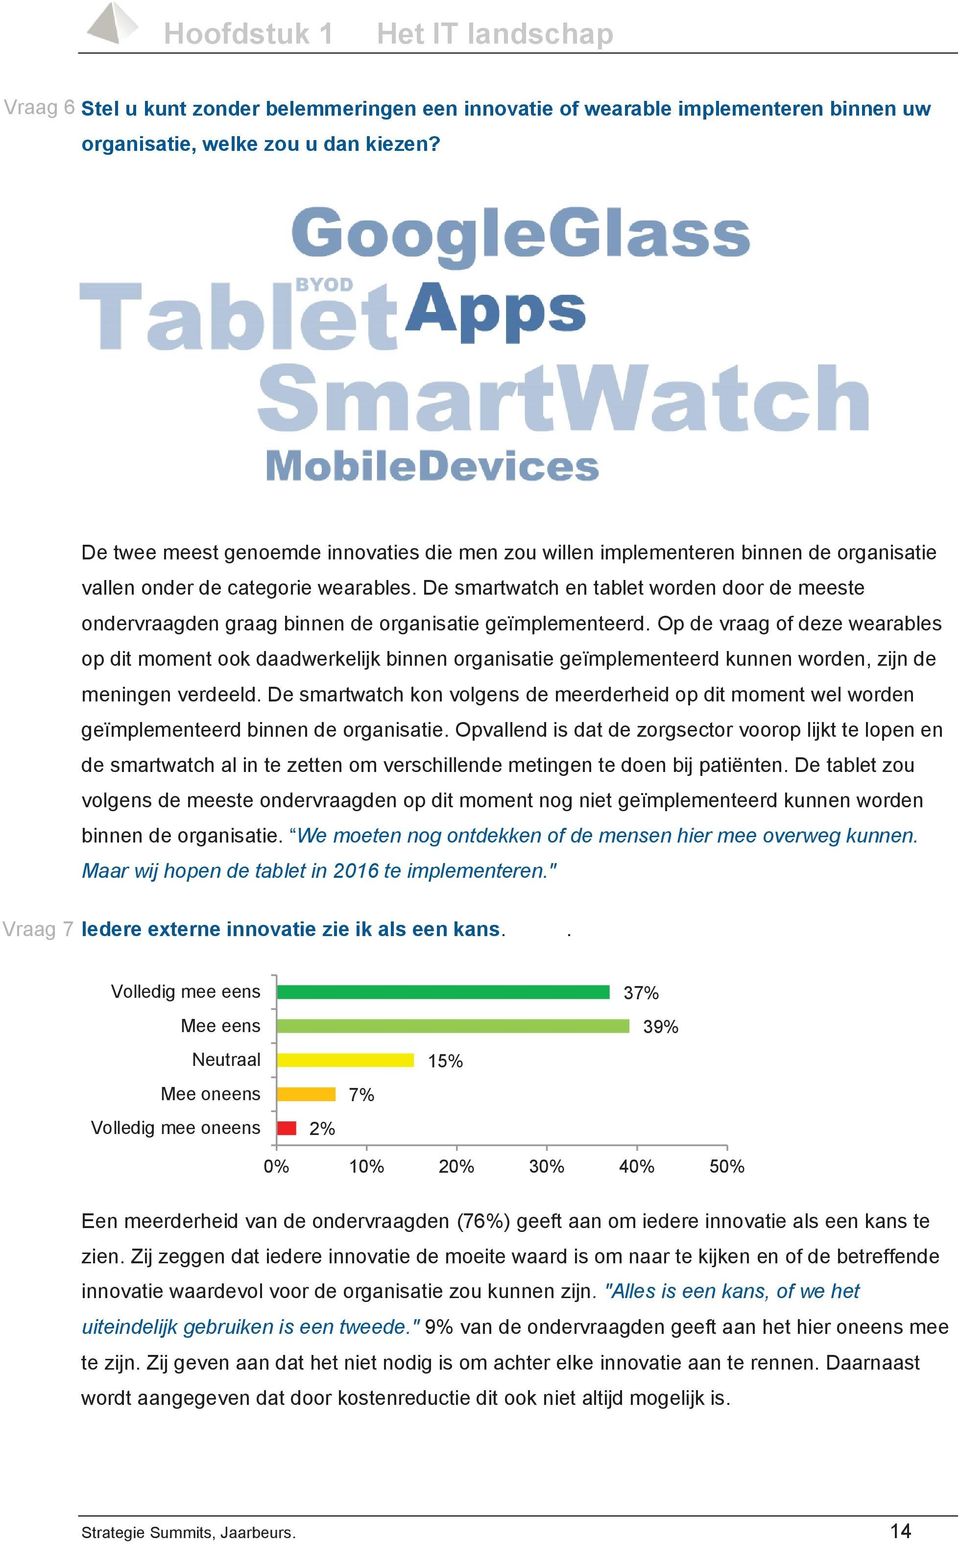 De smartwatch en tablet worden door de meeste ondervraagden graag binnen de organisatie geïmplementeerd.